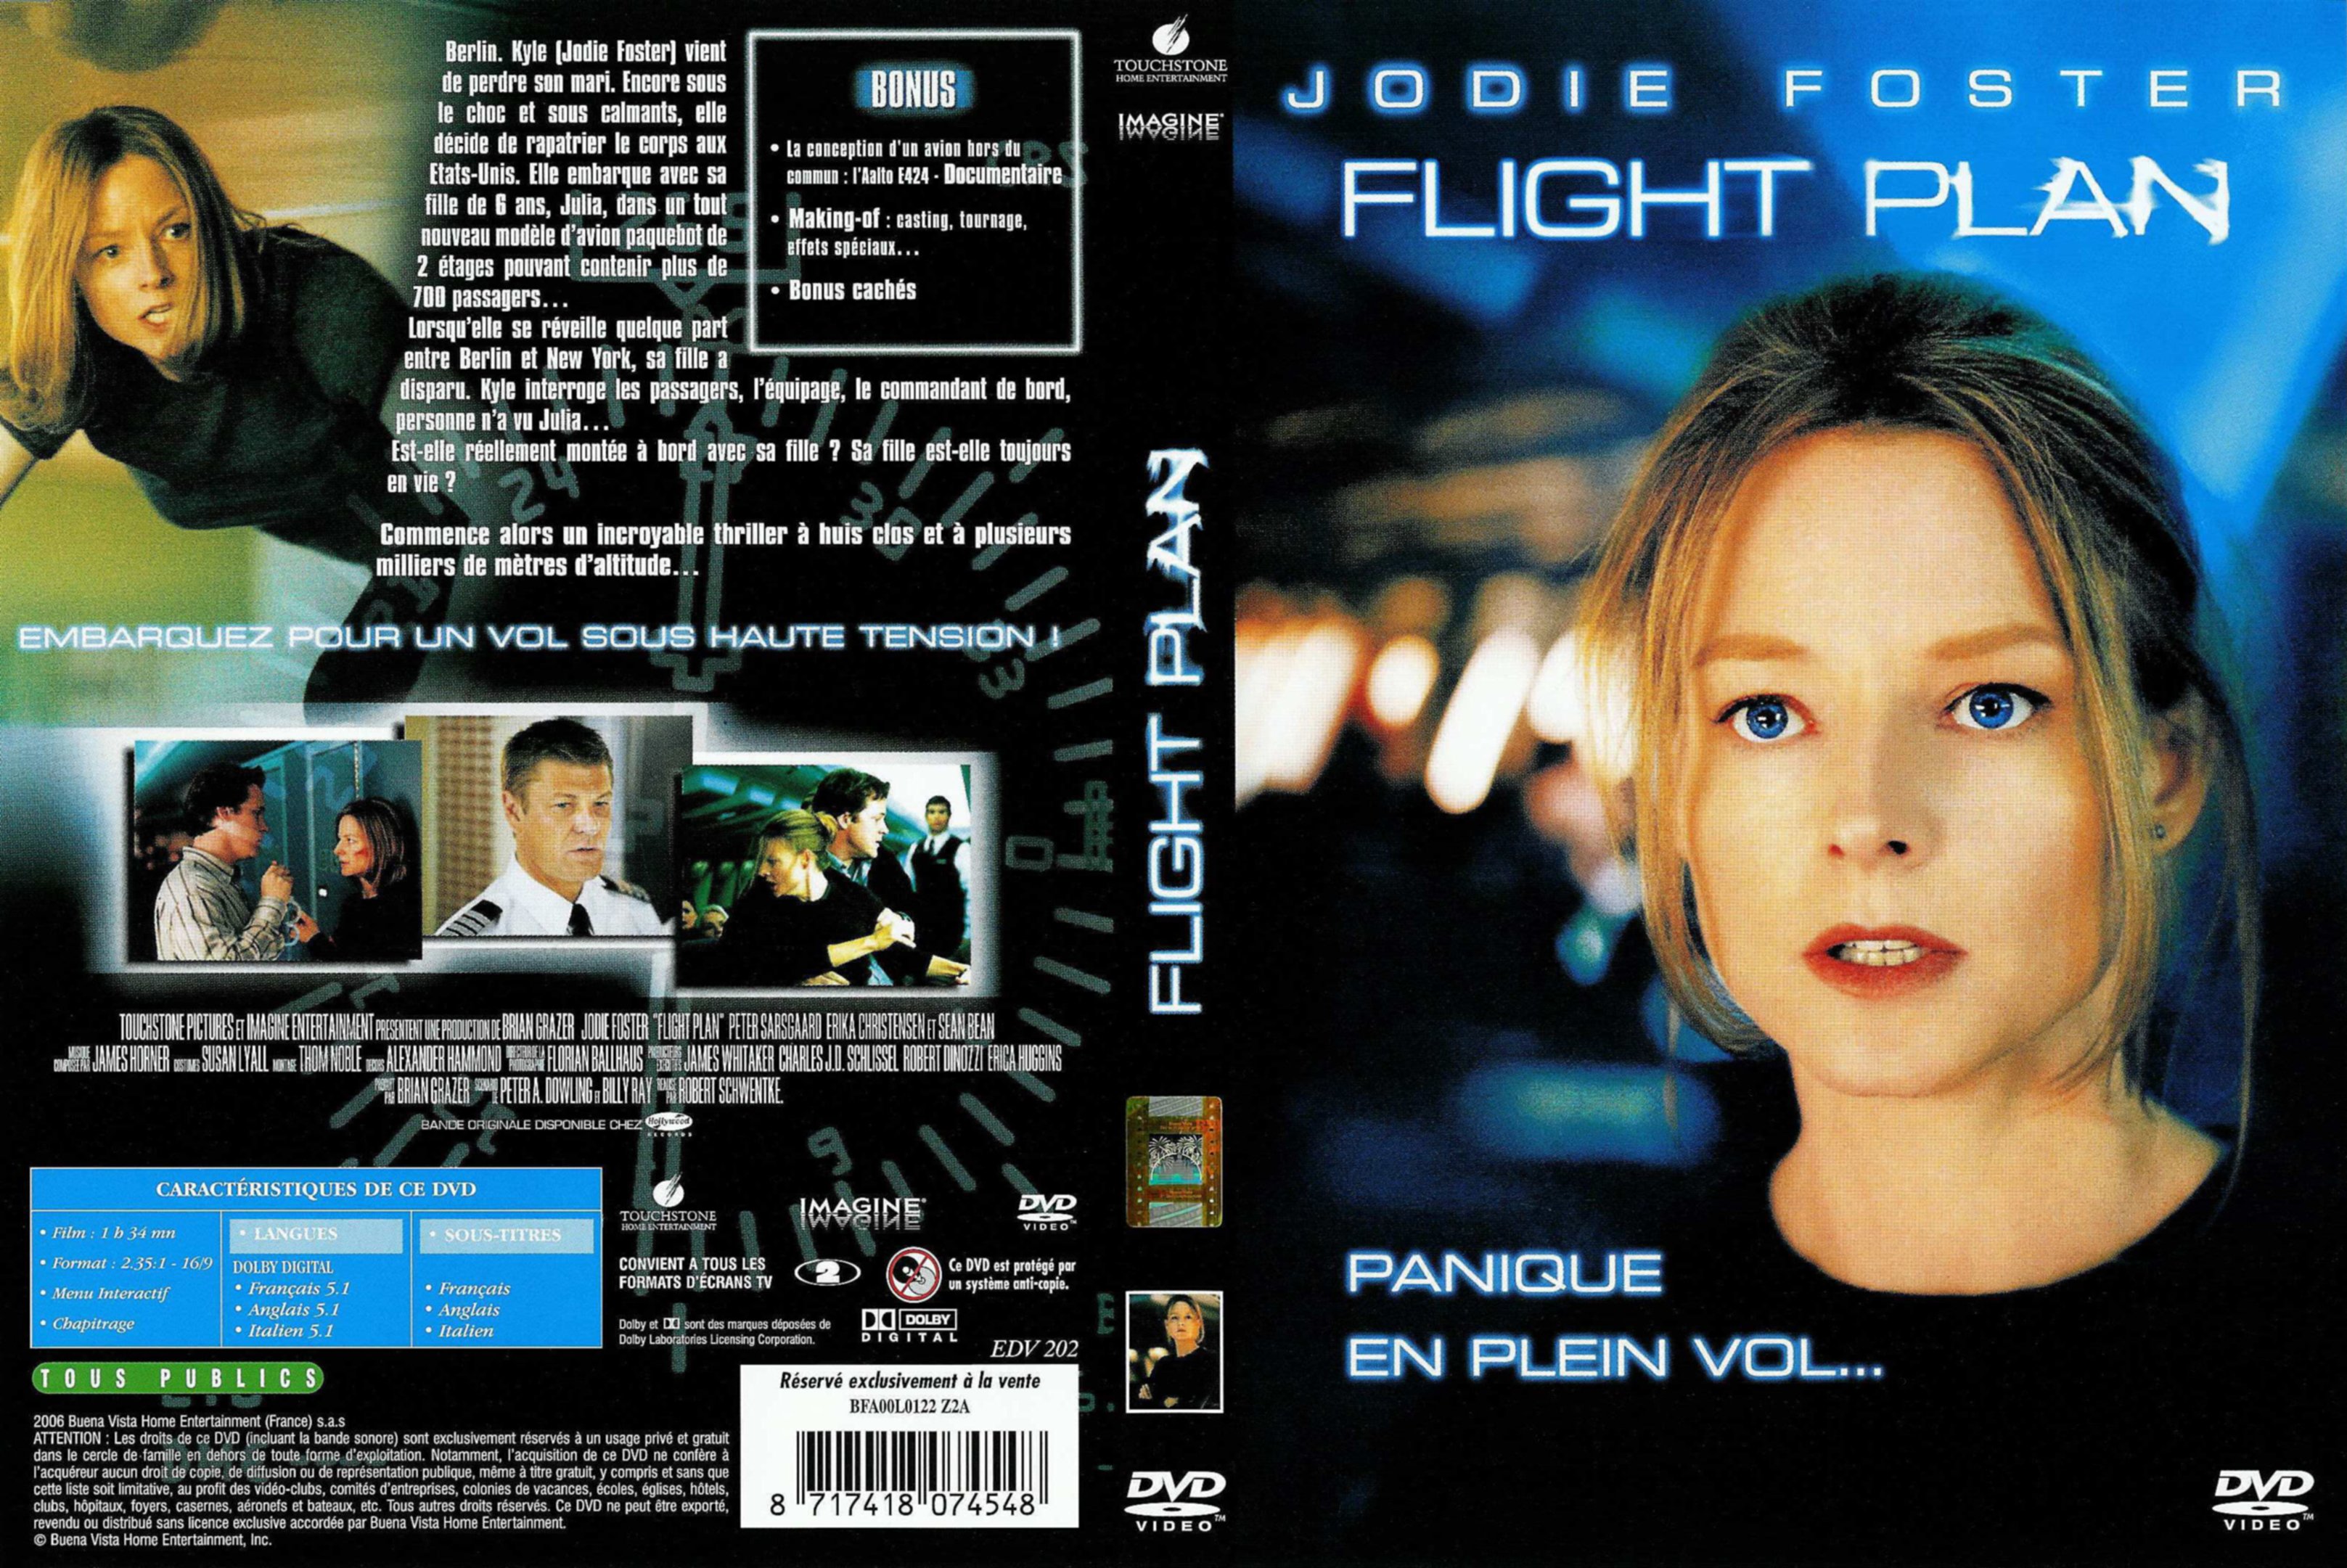 Jaquette DVD Flight Plan v2